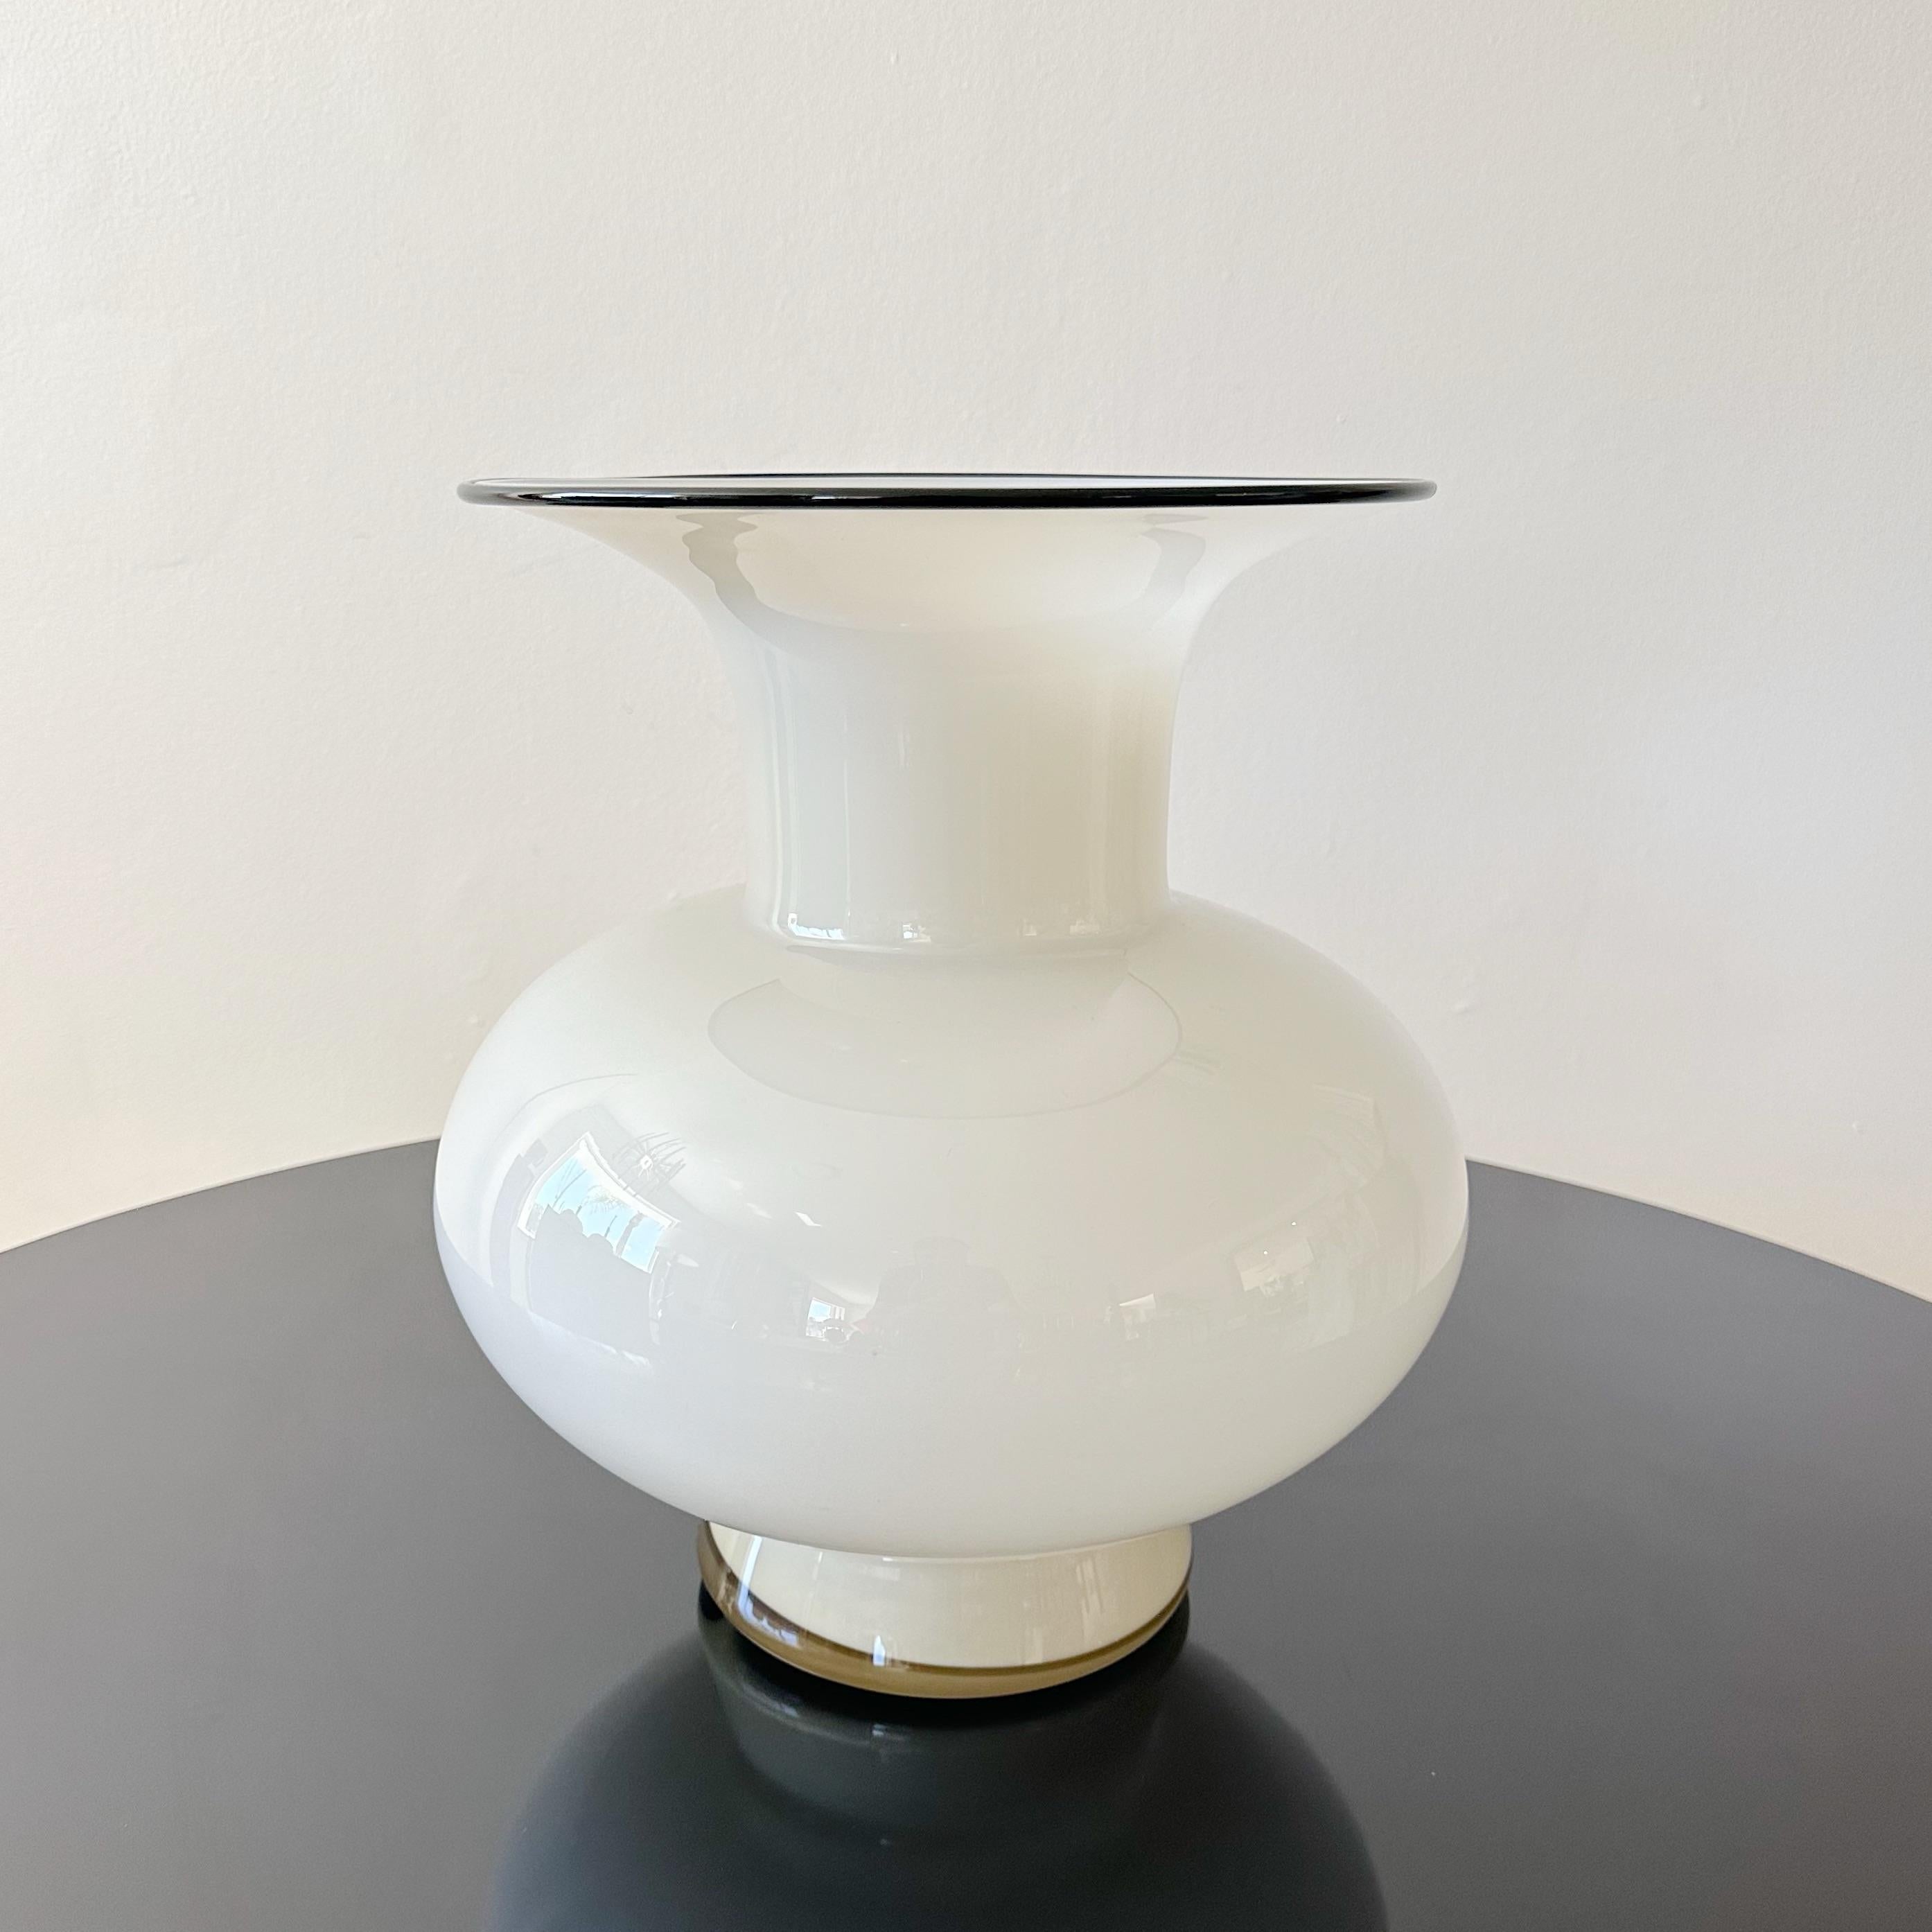 Vase bohémien Loetz fabriqué par Michael Powolny dans les années 1920. Cette pièce du début du 20e siècle présente une taille exceptionnelle, peu commune chez Powolny. La couleur crème est accentuée par un bord en verre noir appliqué. L'ouverture du